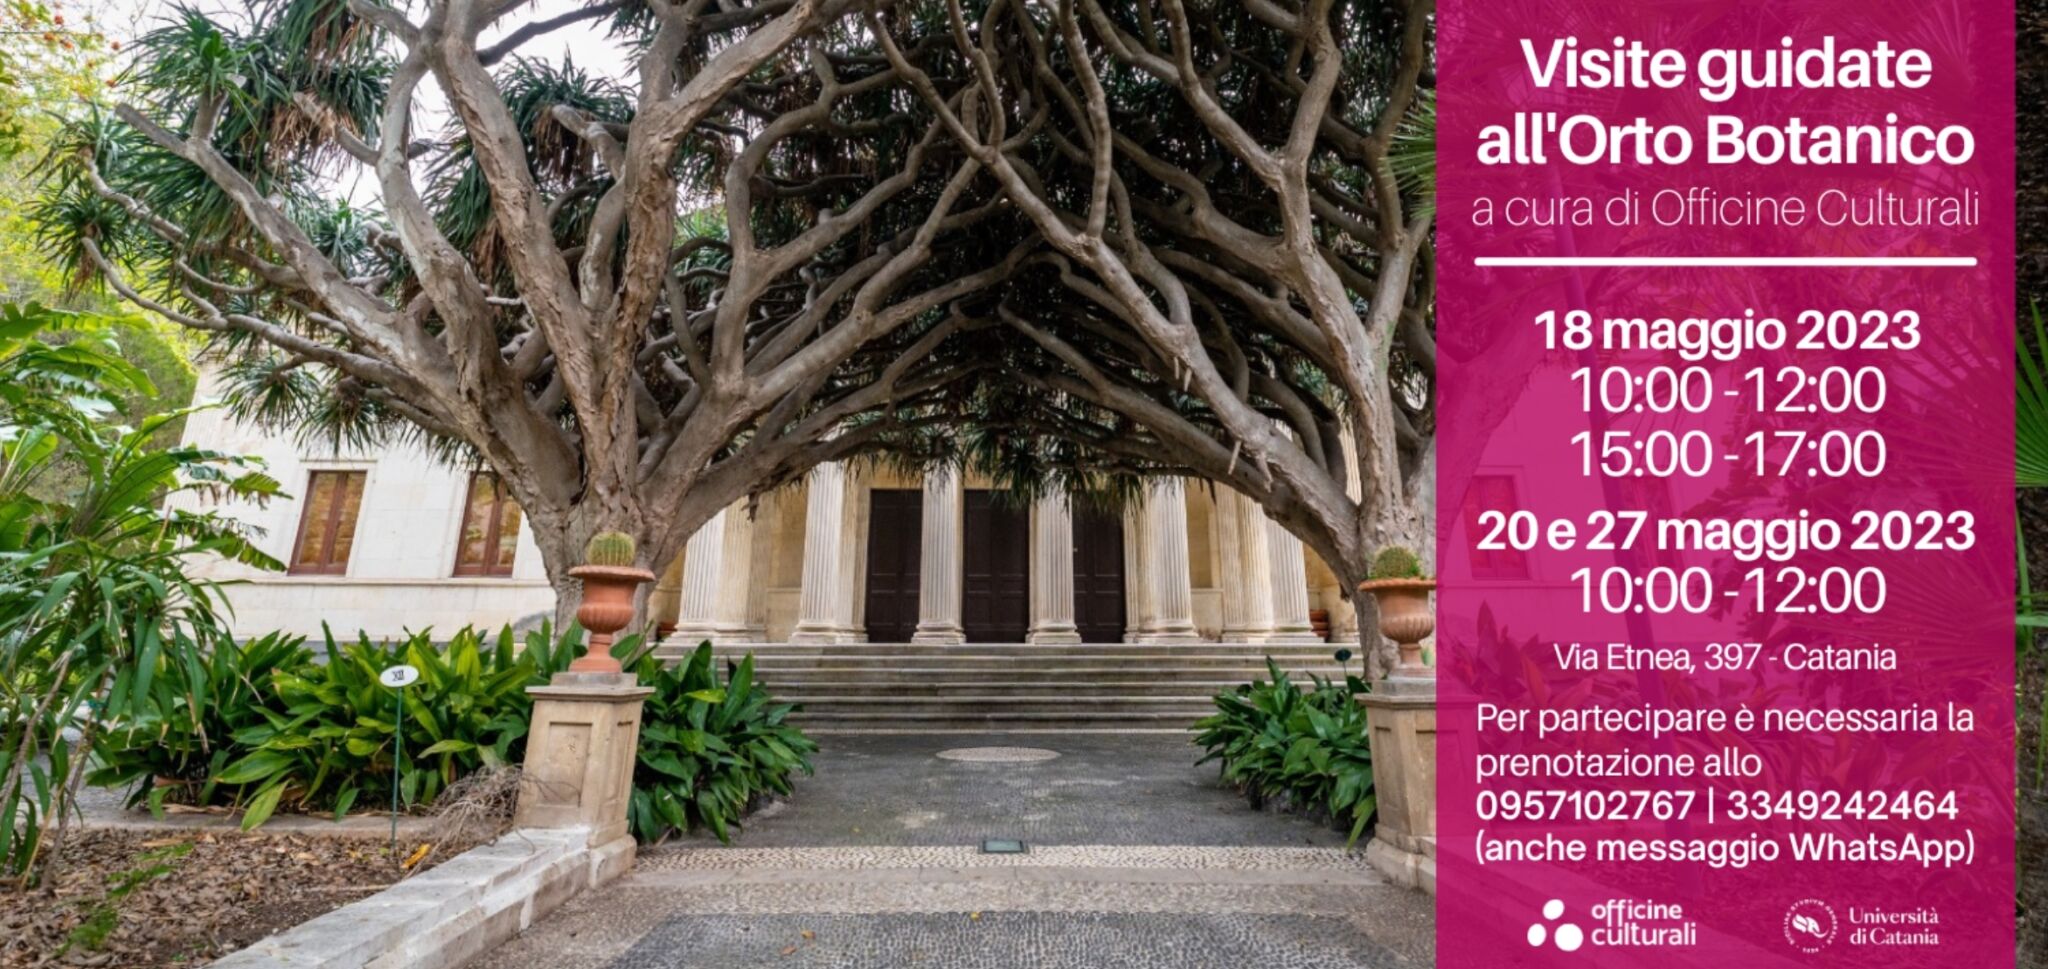 Visite guidate all’Orto Botanico di Catania 18, 20 e 27 maggio